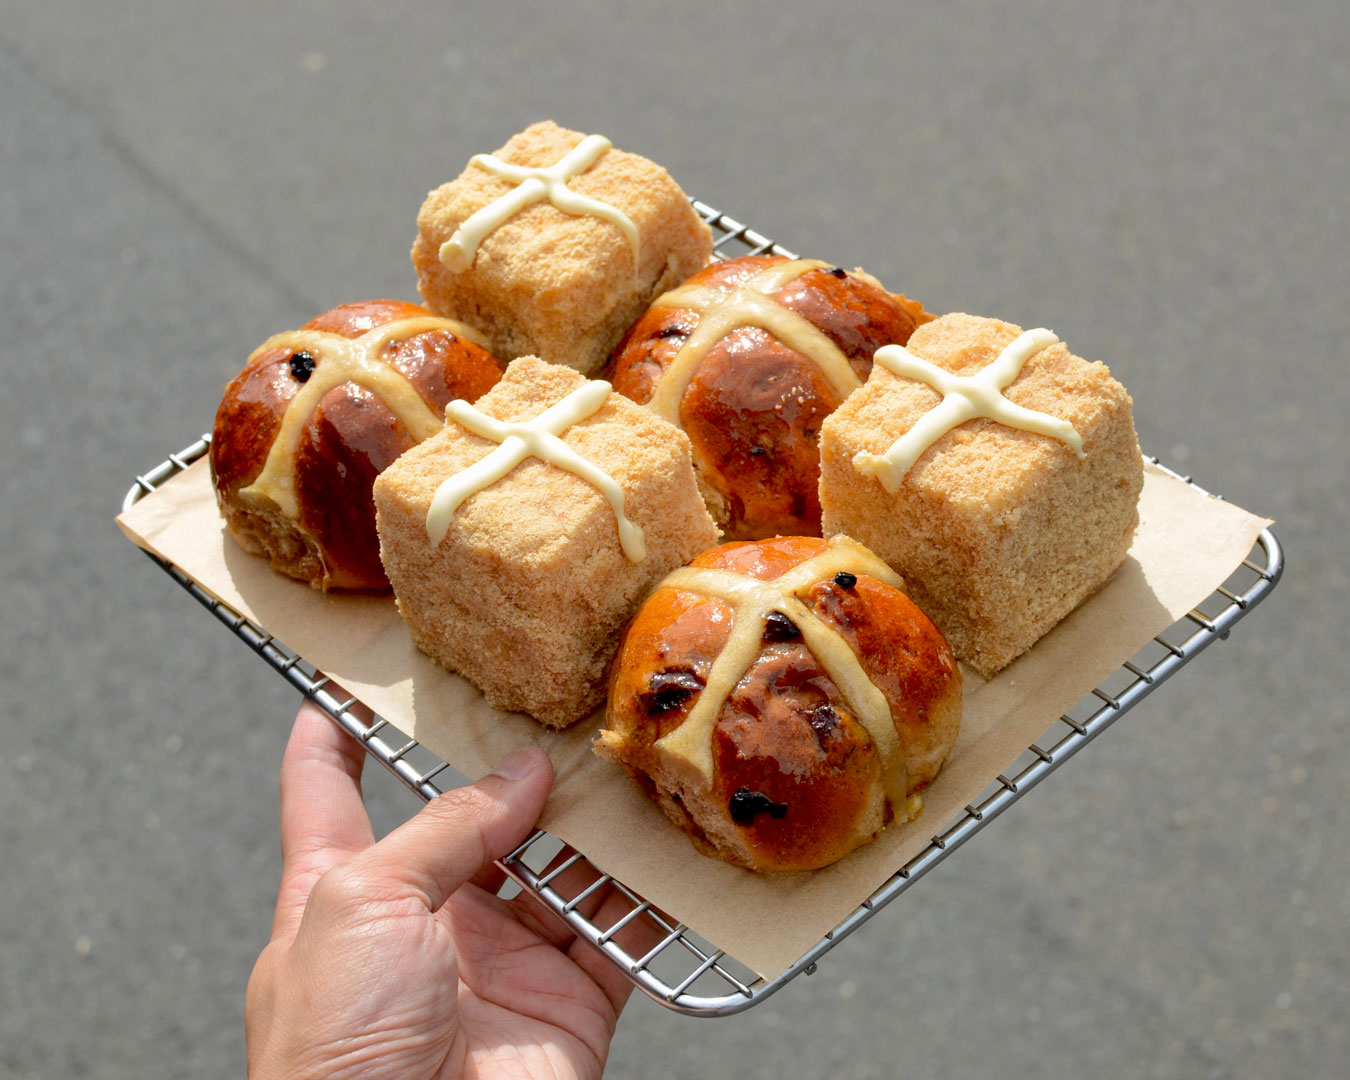 hot cross buns and lamingtons